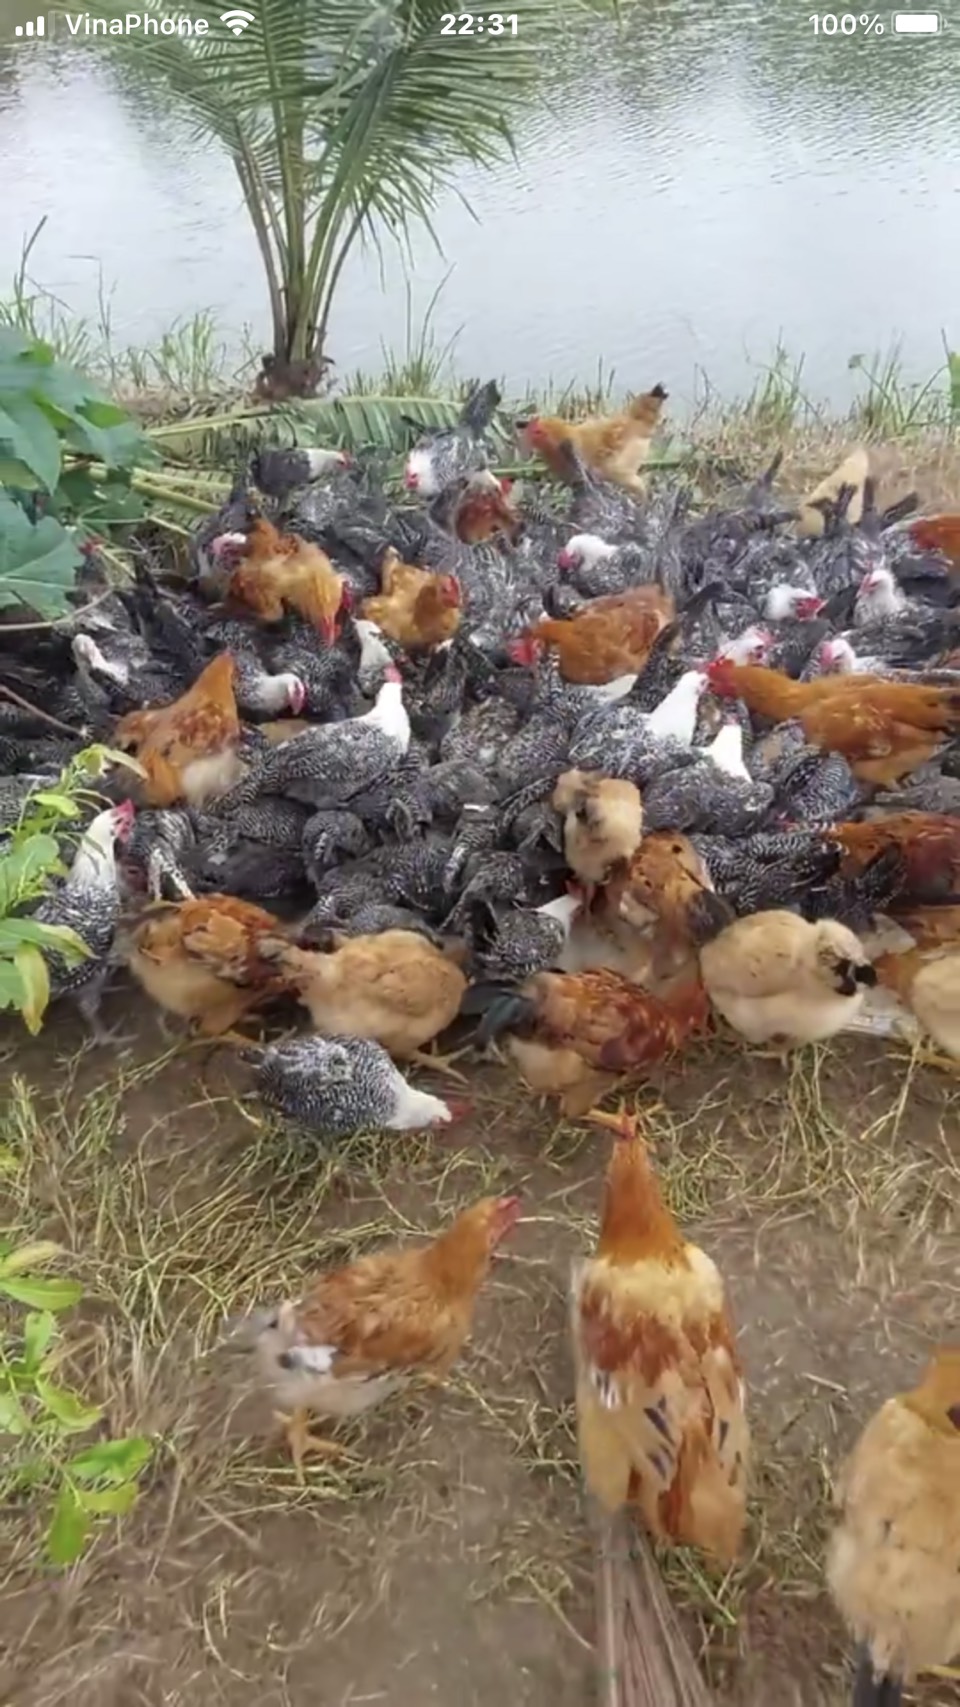 Kỹ thuật nuôi gà thả vườn  cho hộ gia đình